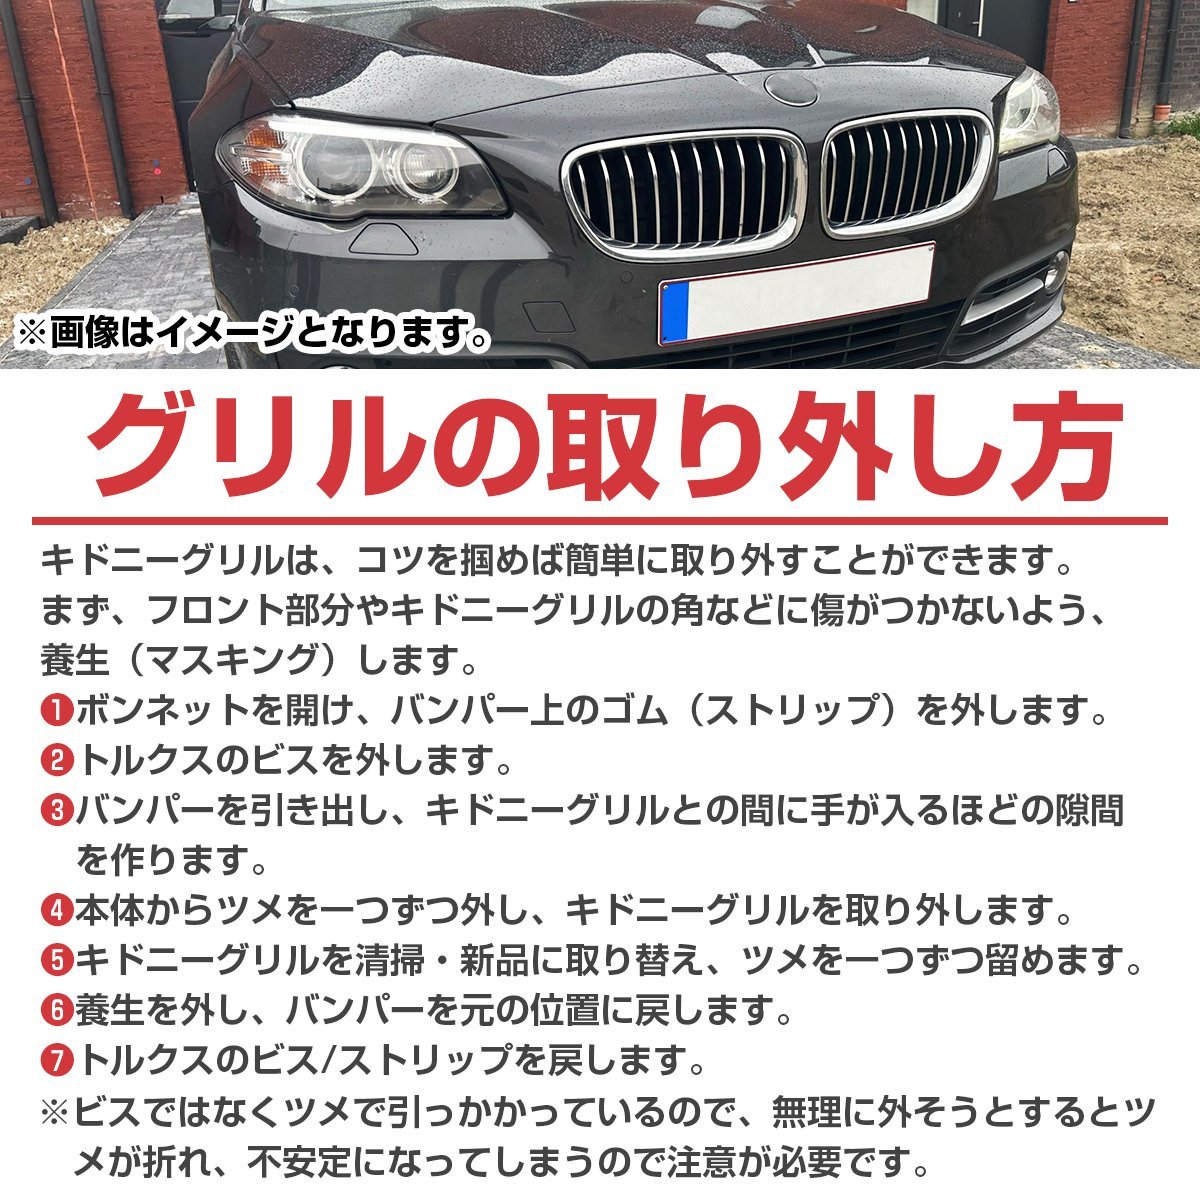 【新品即納】 BMW 4シリーズ F32 F33 F36 F80 F82 2013-2018年 Mスポーツ M3 M4 ルック キドニー ダブルフィン グリル ブラック 艶あり黒_画像4